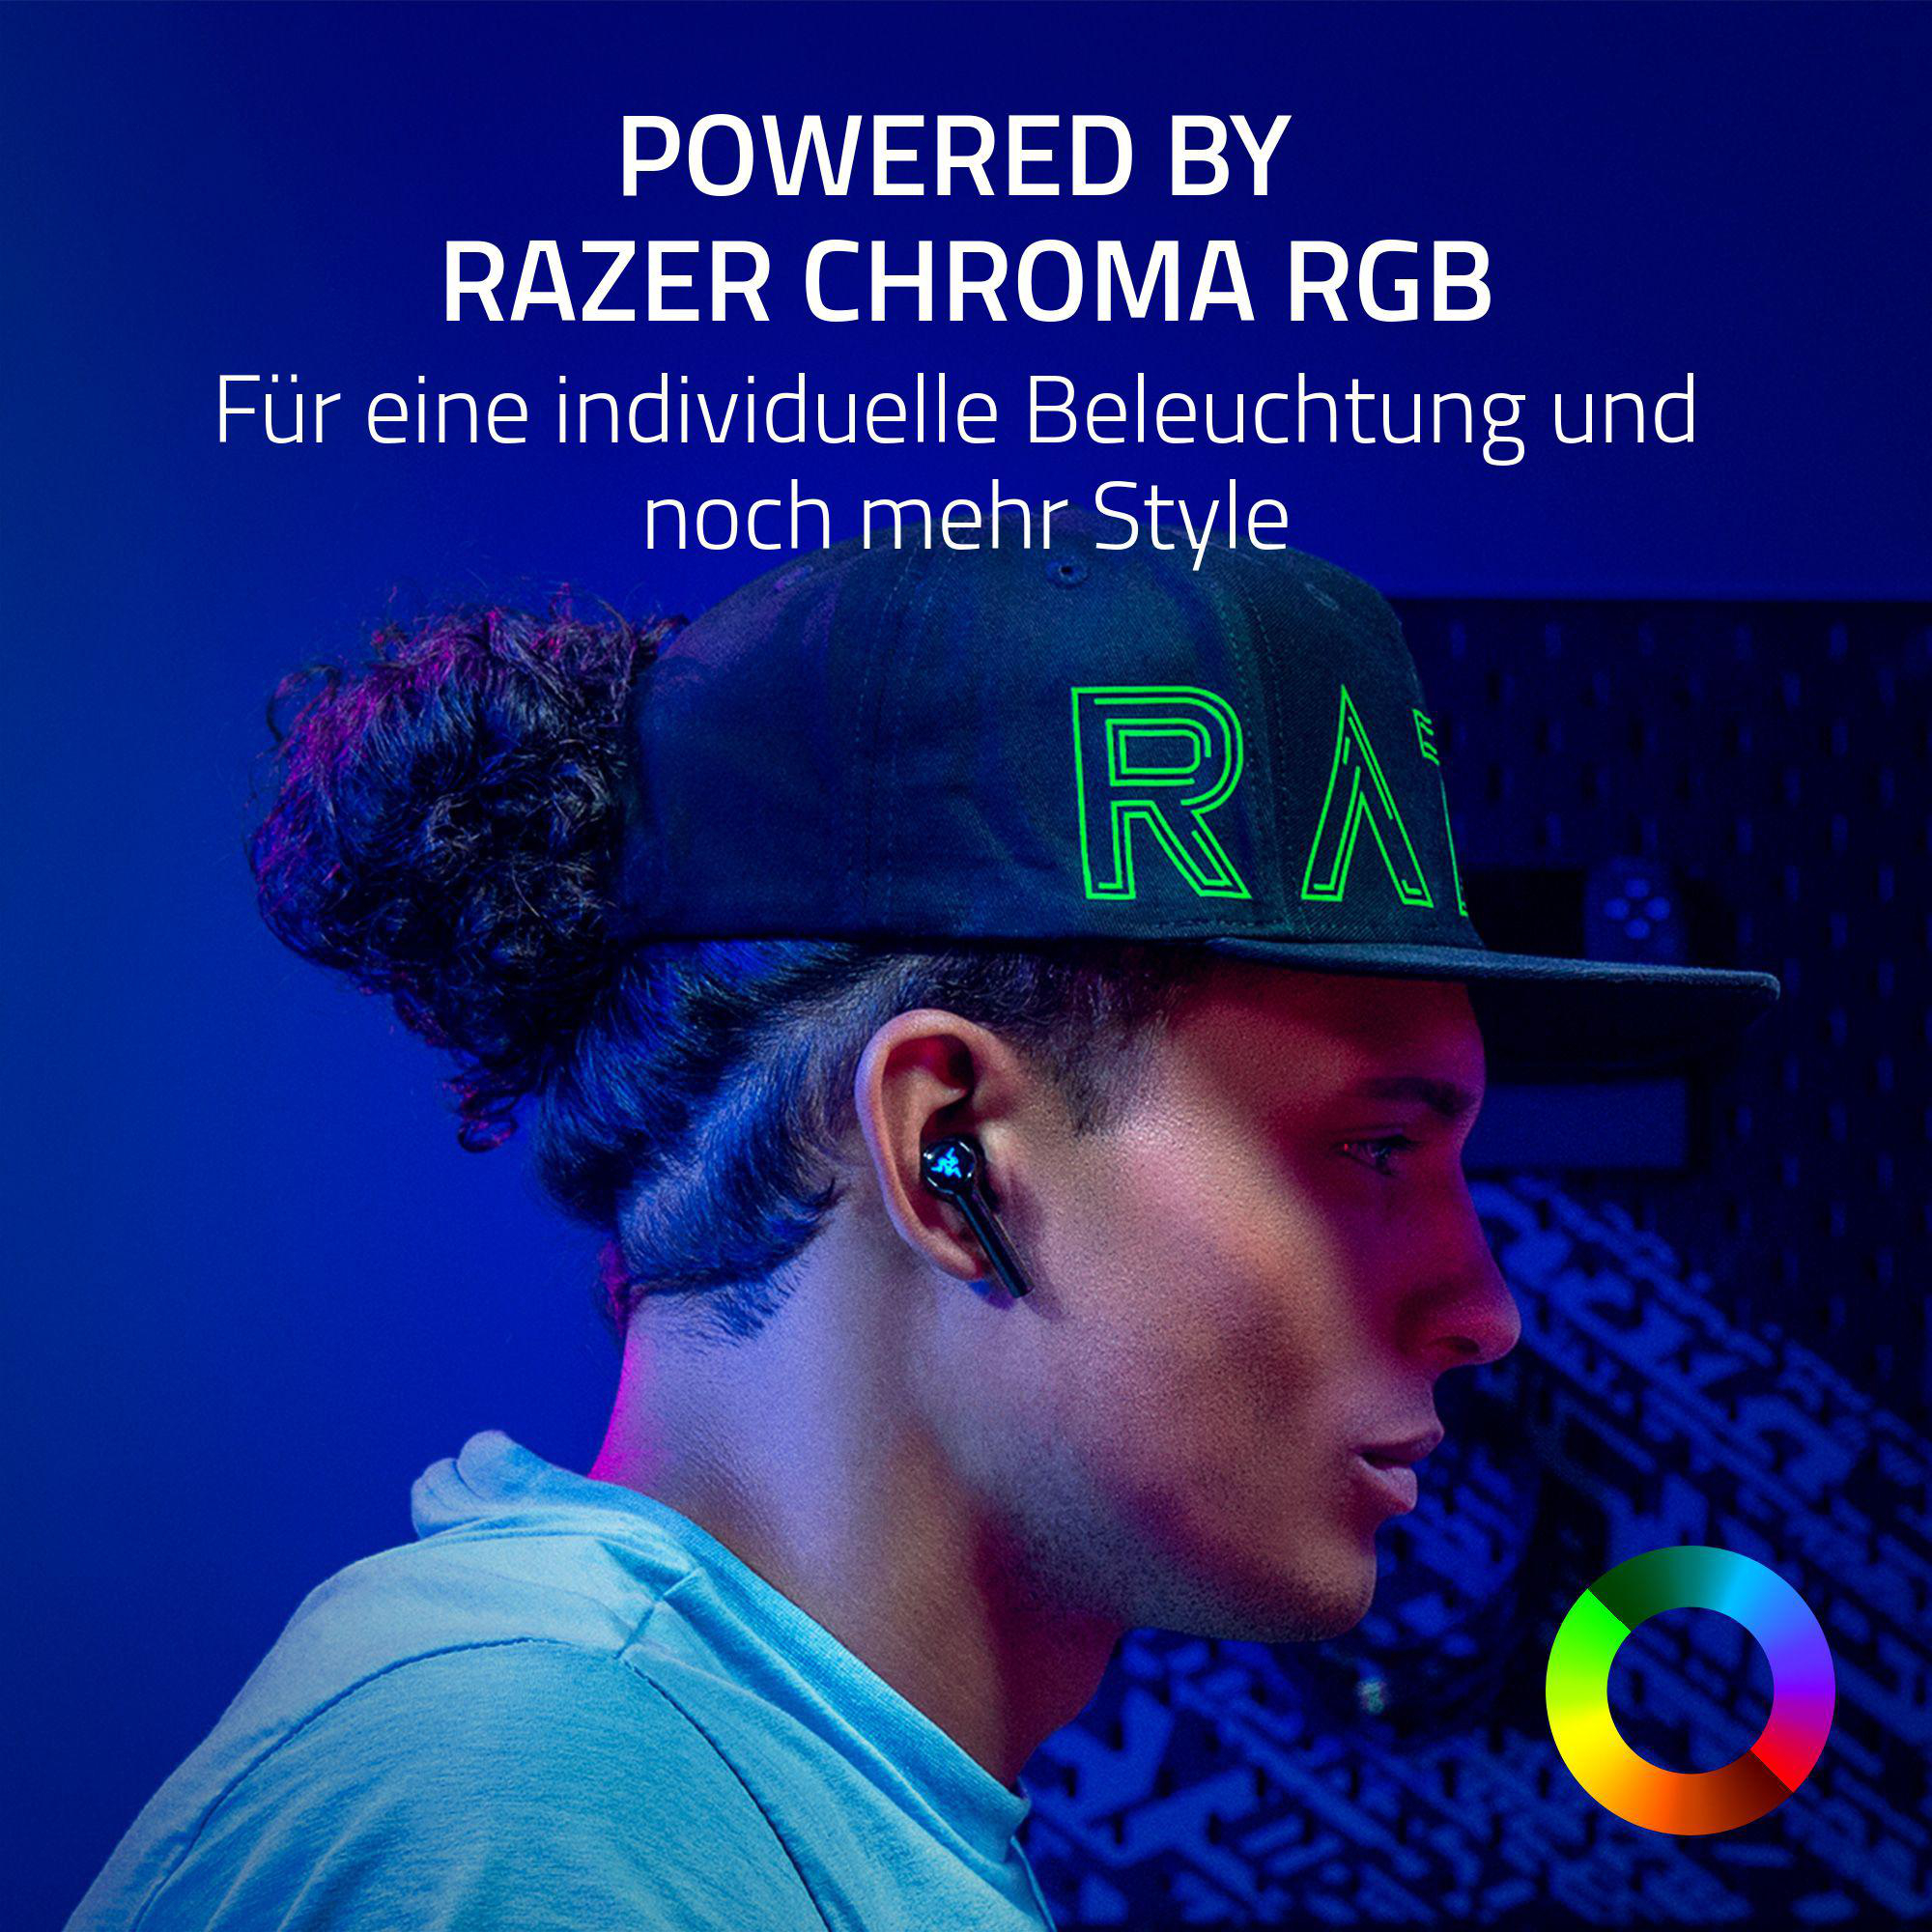 RAZER Hammerhead Pro HyperSpeed In-ear Wireless, True Schwarz Kopfhörer Bluetooth